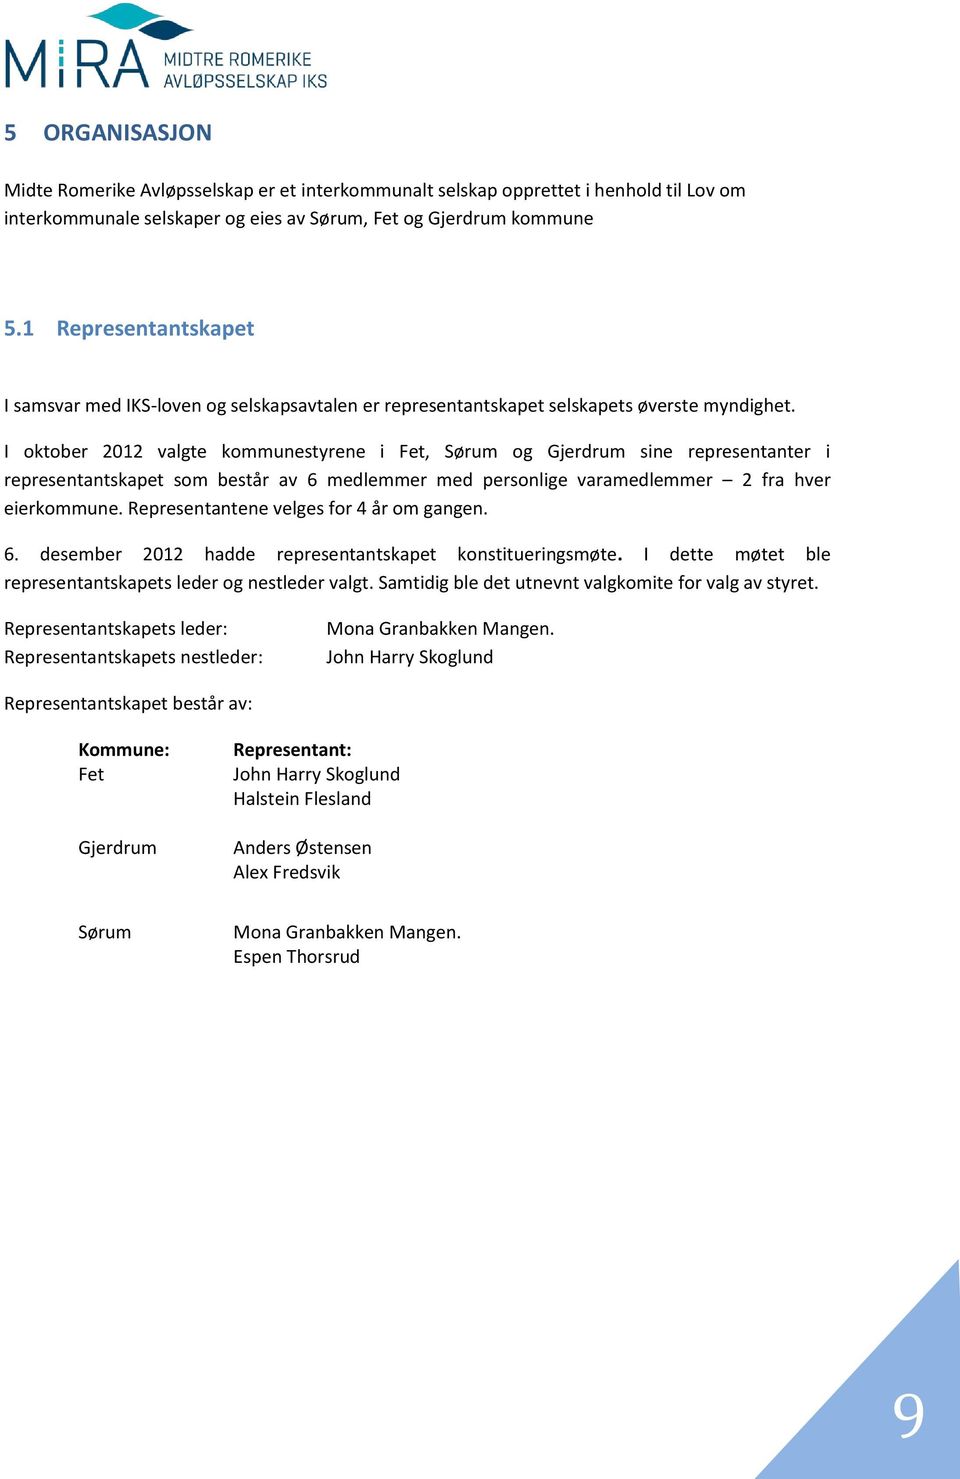 I oktober 2012 valgte kommunestyrene i Fet, Sørum og Gjerdrum sine representanter i representantskapet som består av 6 medlemmer med personlige varamedlemmer 2 fra hver eierkommune.